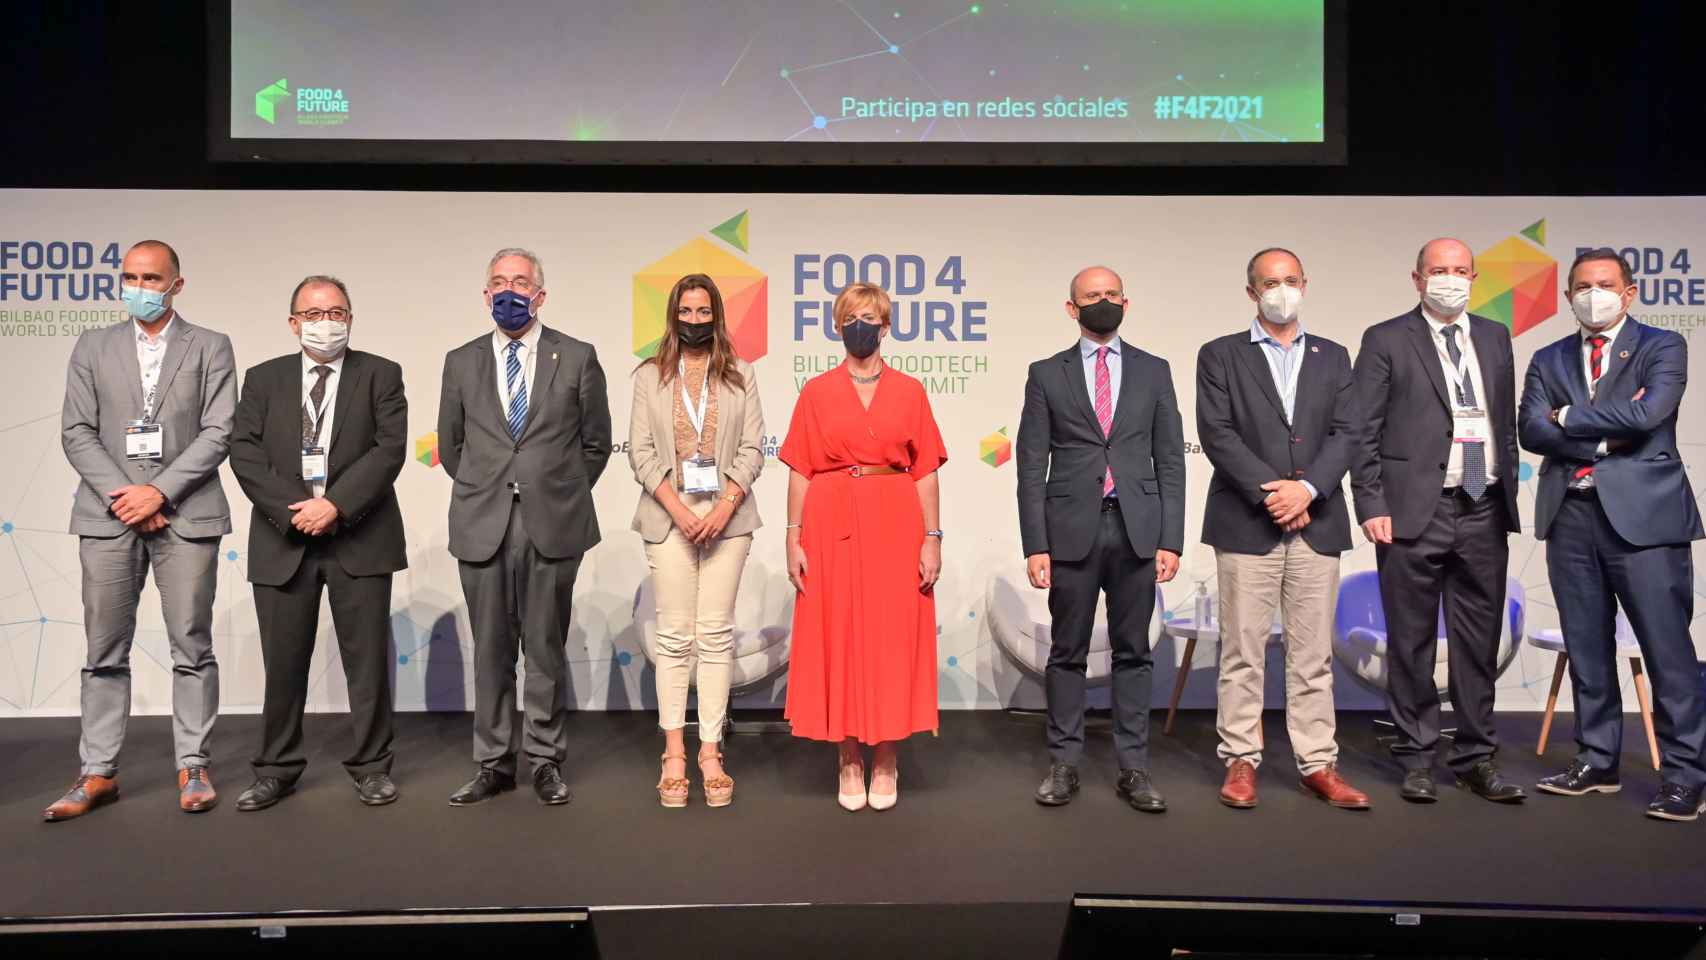 Los líderes autonómicos en materia agroalimentaria y de promoción del desarrollo rural, presentes en Food 4 Future.